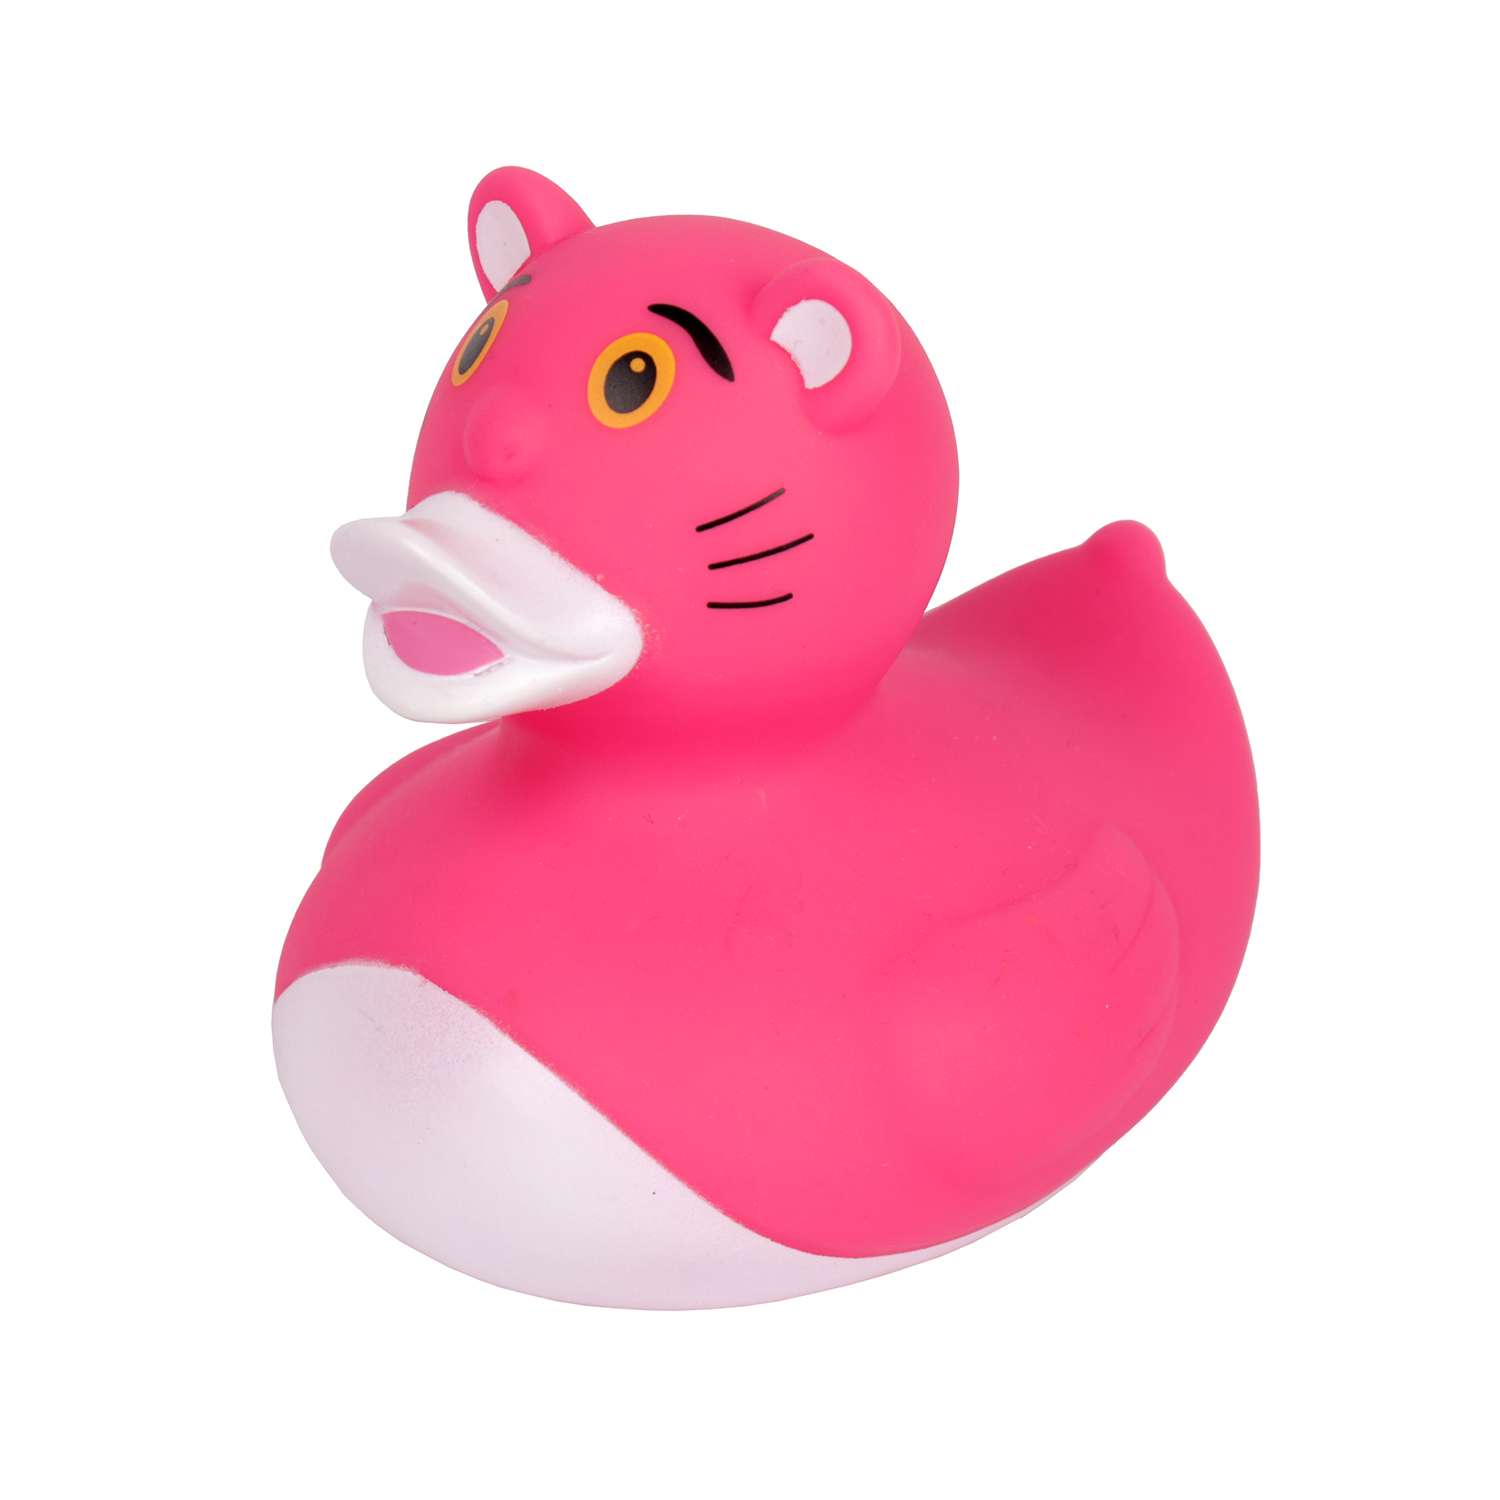 Игрушка для ванны сувенир Funny ducks Розовая пантера уточка 1314 - фото 1